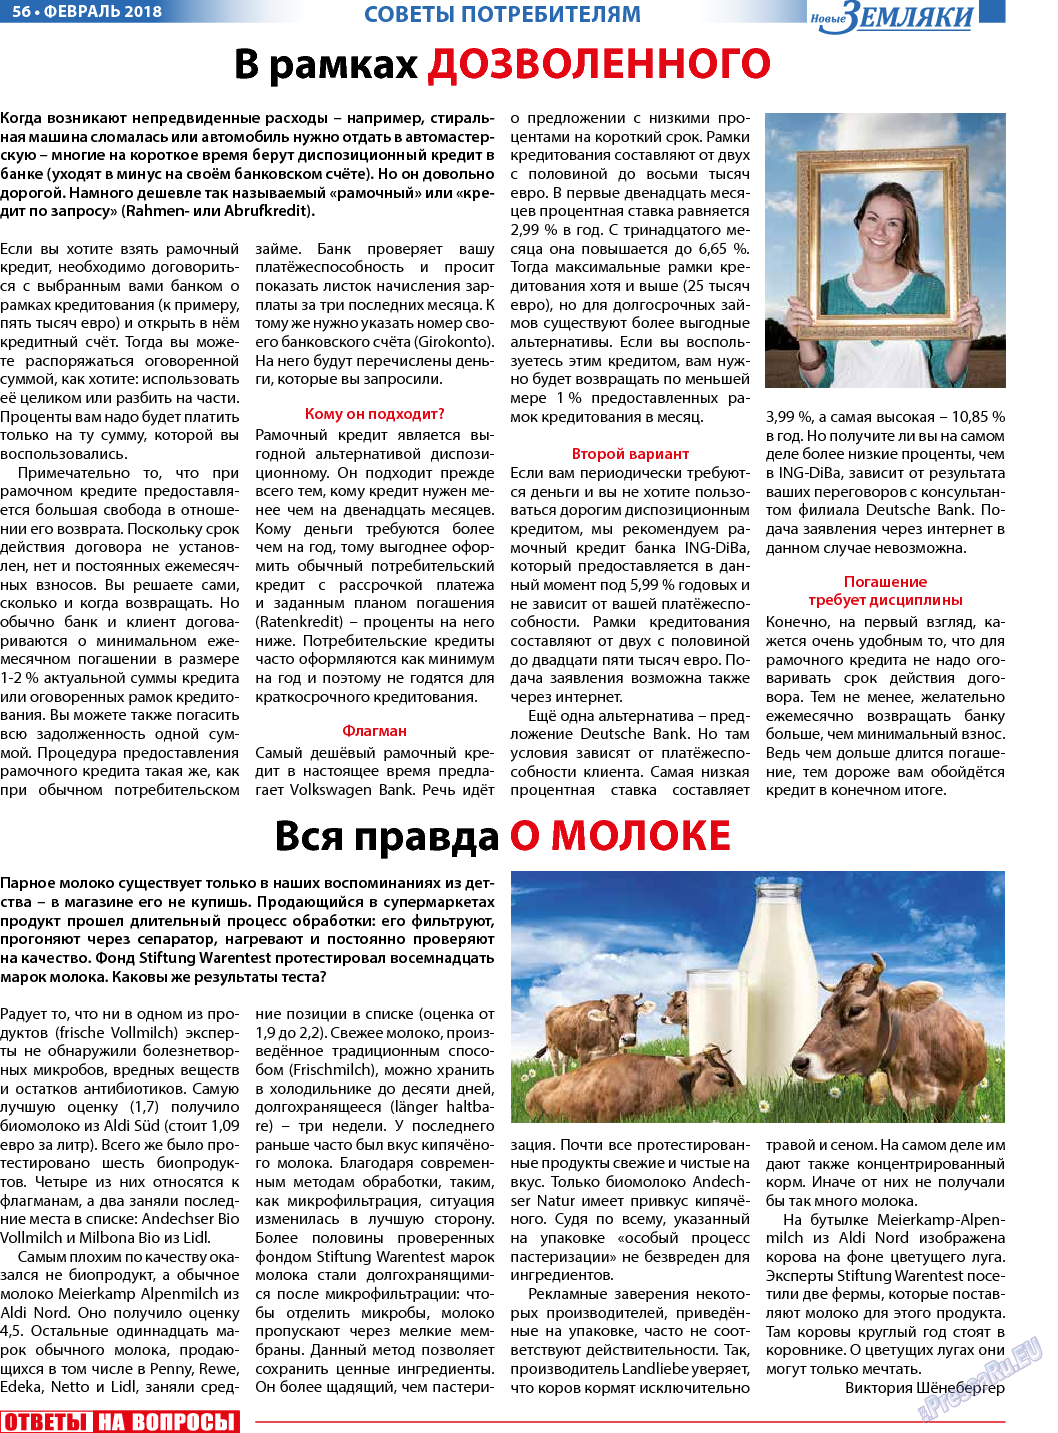 Новые Земляки, газета. 2018 №2 стр.56